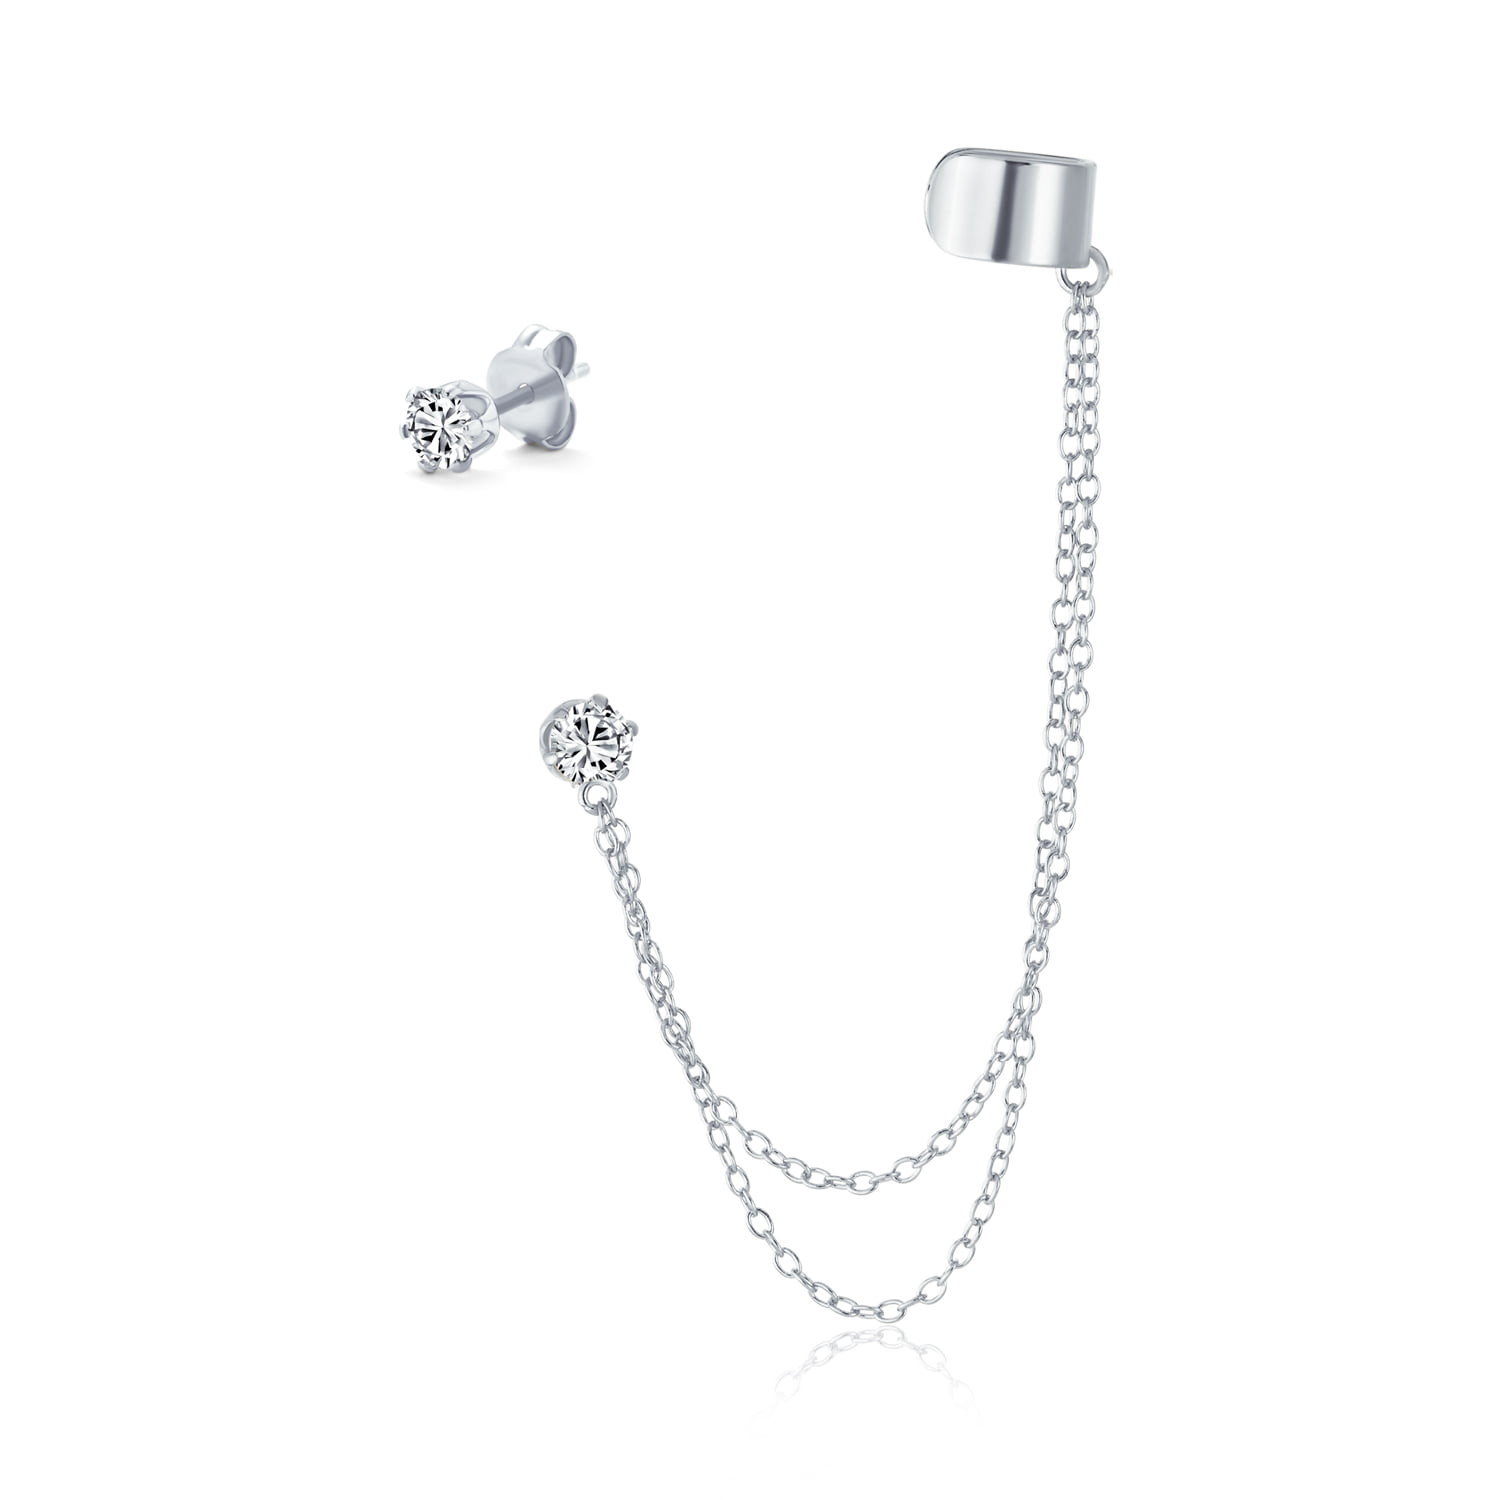 Details about   3Pcs Women Crystal Star Moon Dangle Drop Ear Cuff Clip Stud Earrings Set Jewelry 